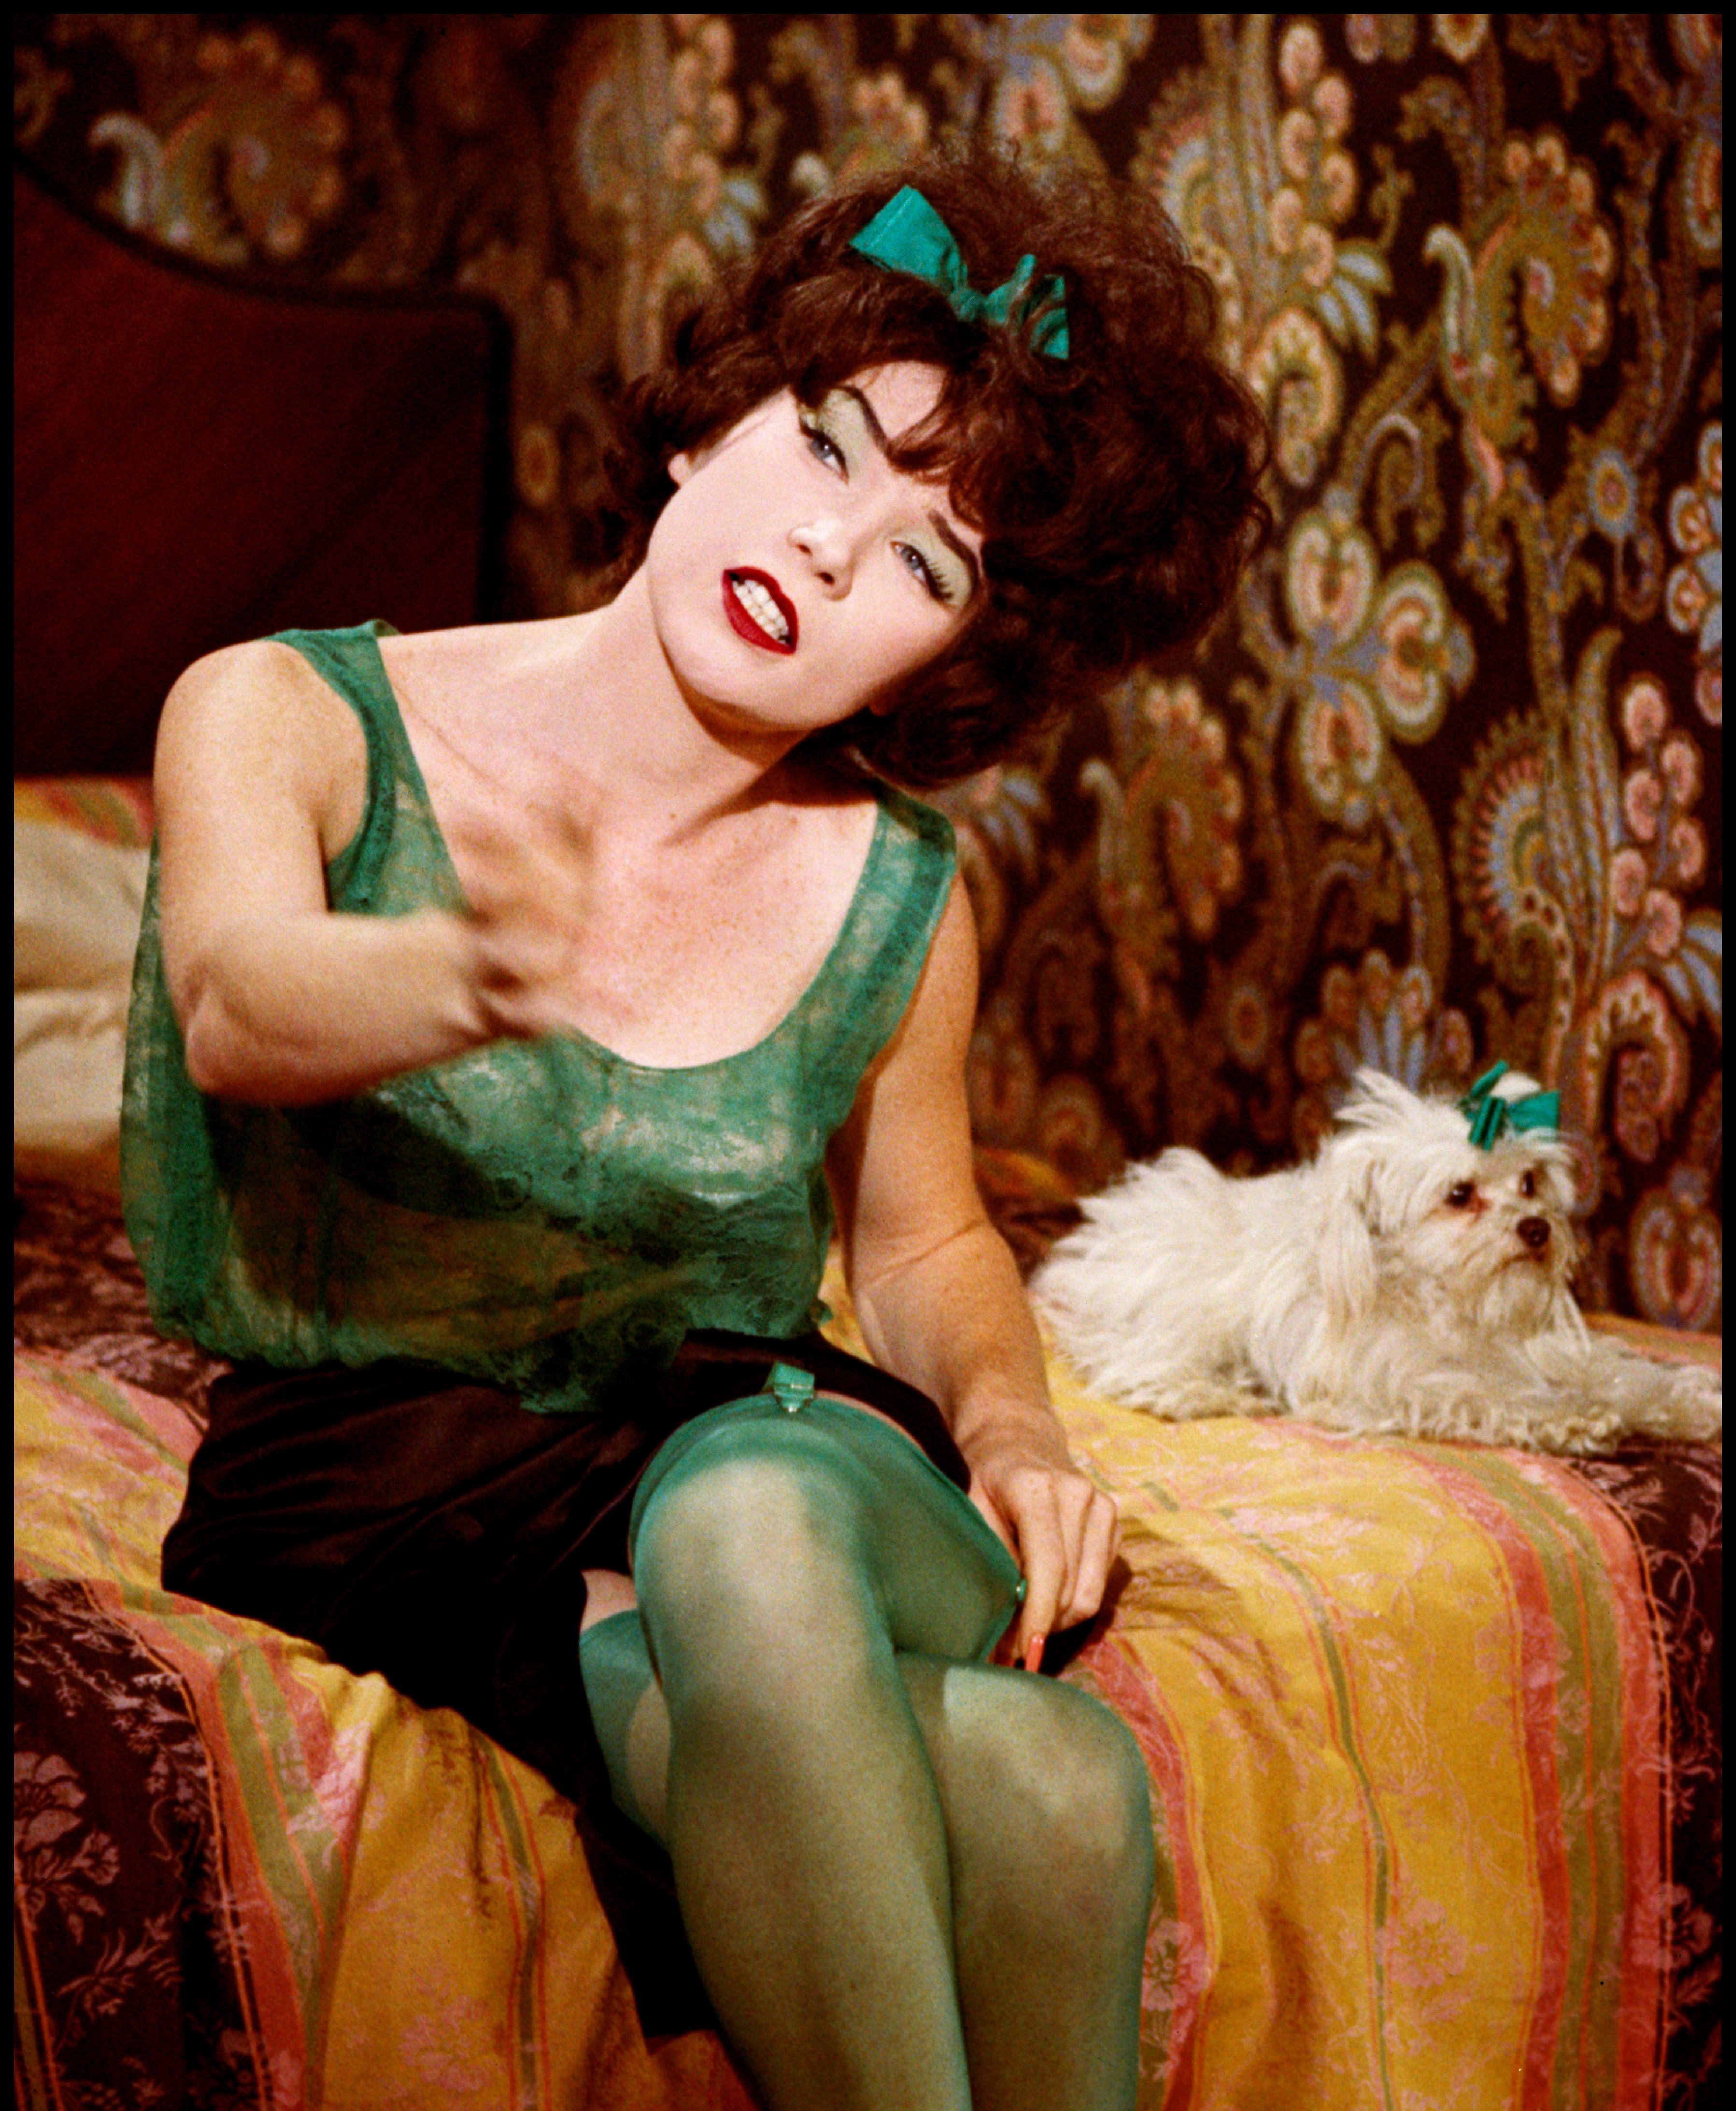 Irma La Douce wears green stockings - by Annette Richardson